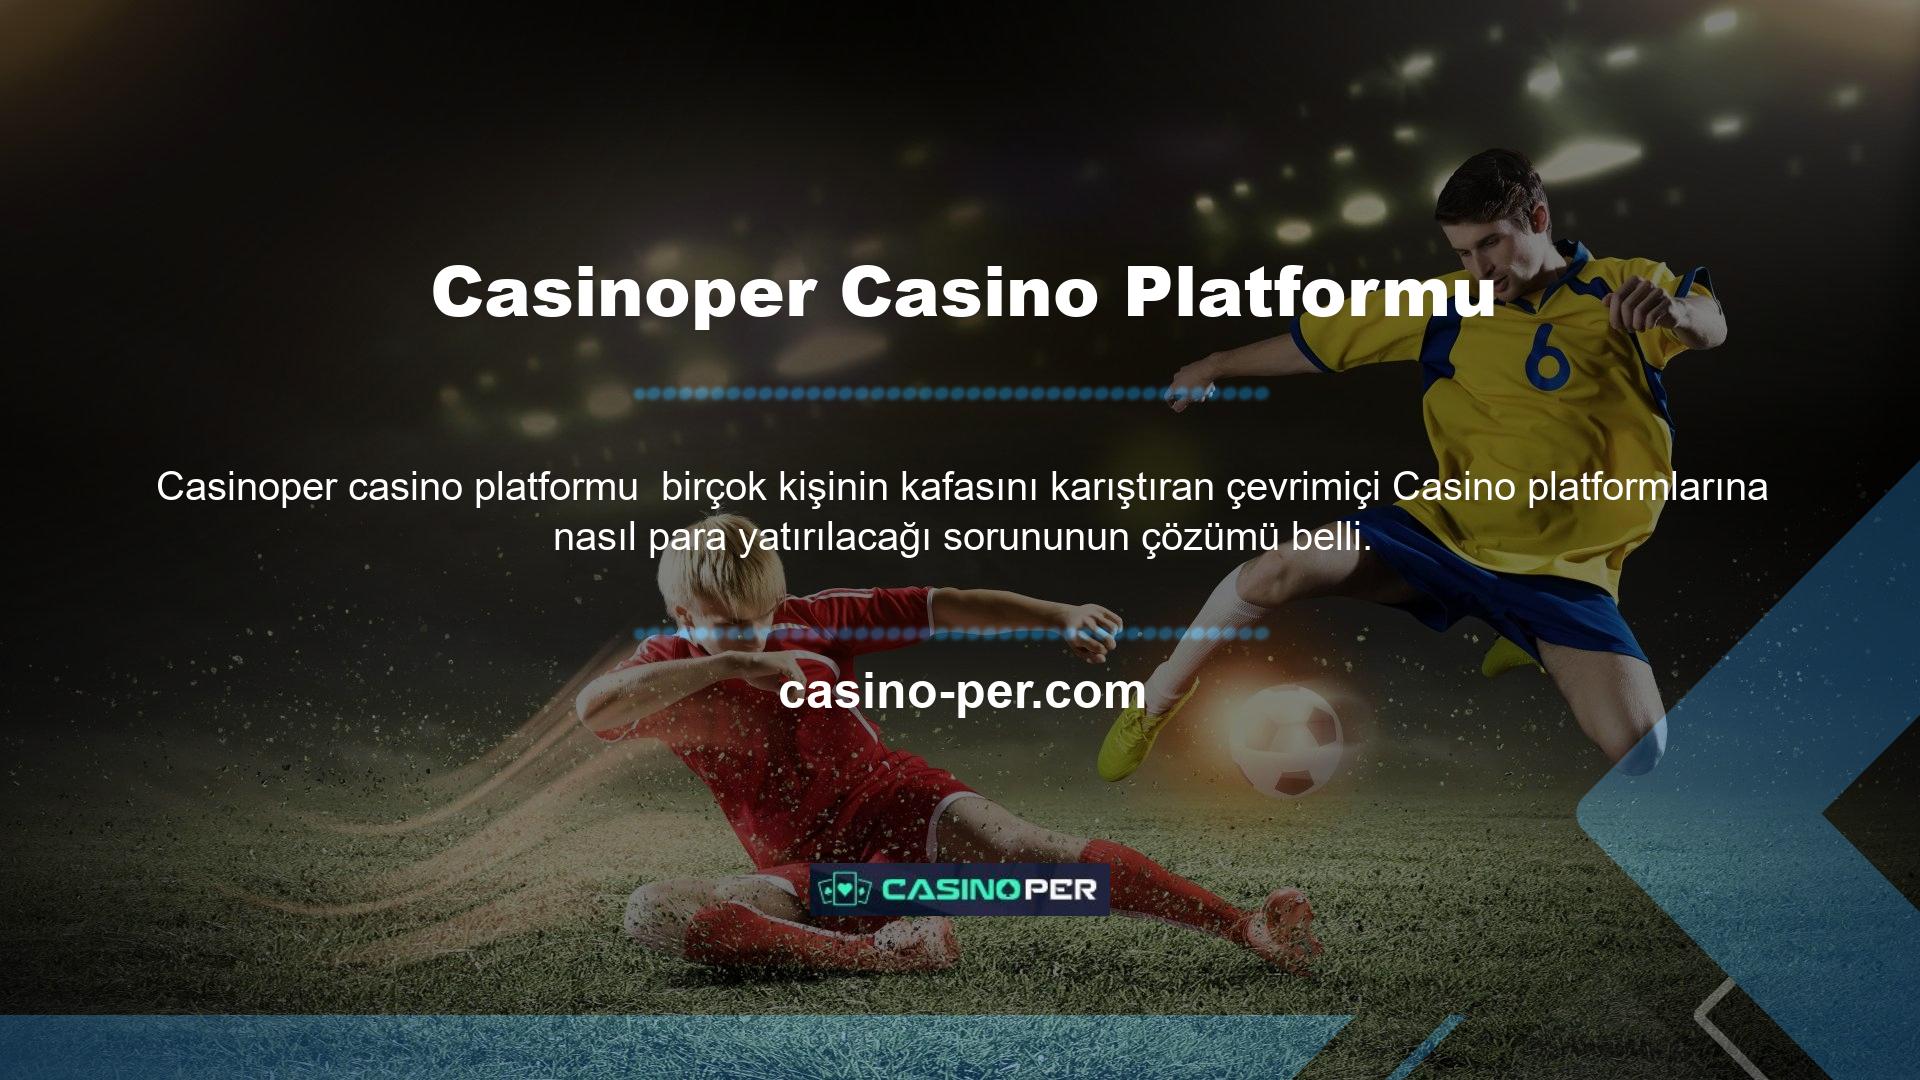 Bazı uluslararası web siteleri, çevrimiçi Casino sitelerinin yol açtığı tıkanıklığı hafifletmek için alternatifler sunmuştur